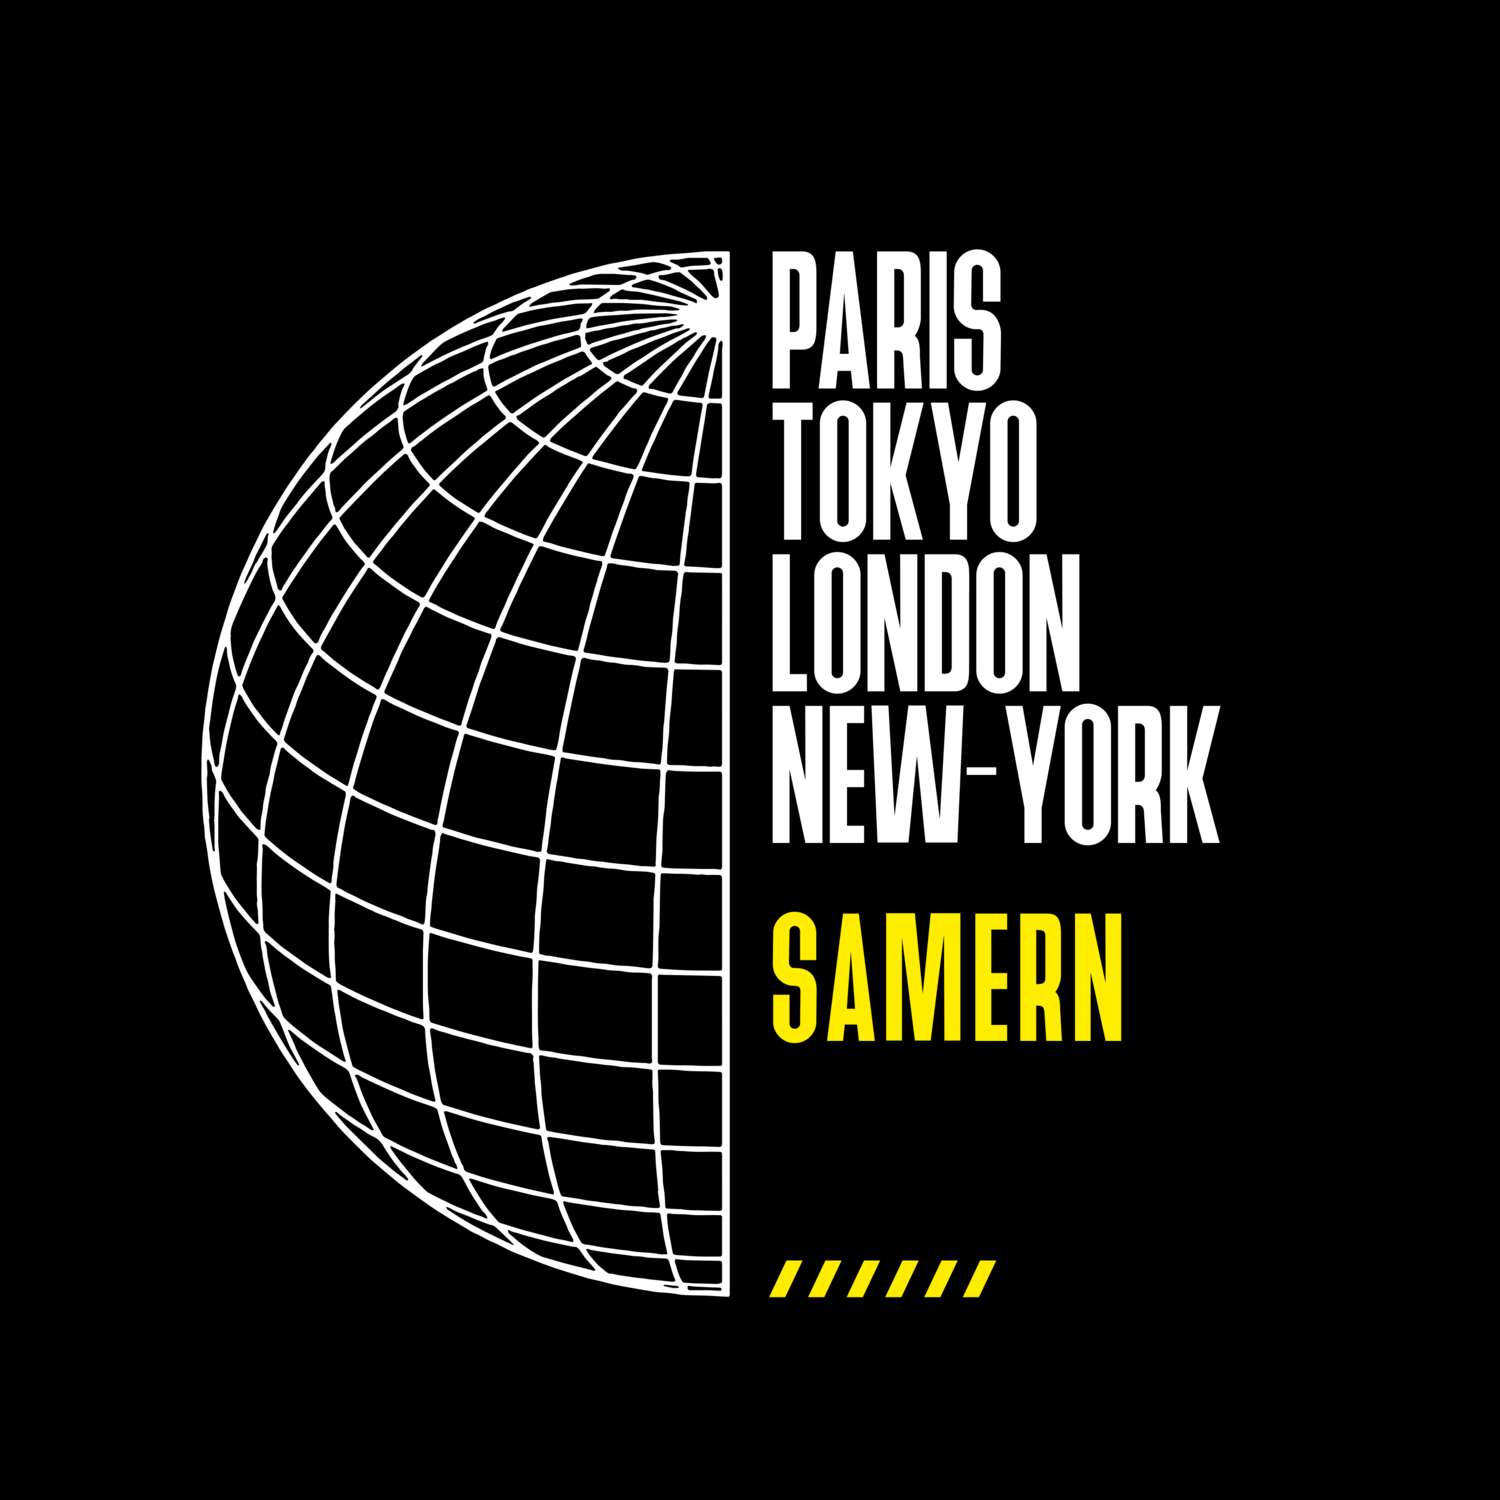 Samern T-Shirt »Paris Tokyo London«